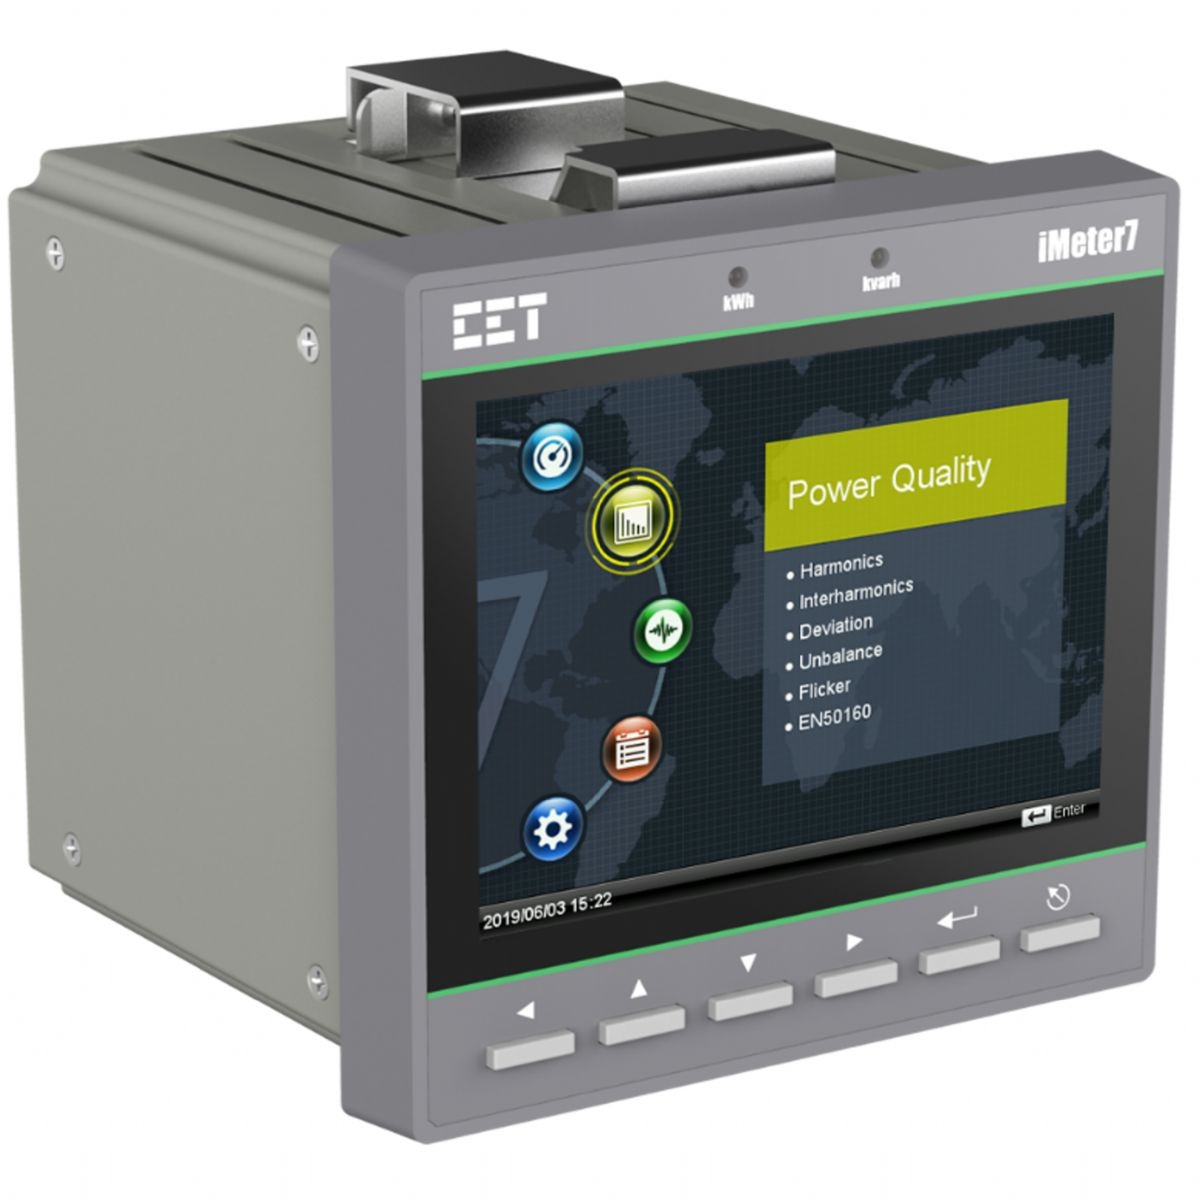 Analyseur de qualité énergétique iMeter7 (IEC61000-4-30 ClassA)